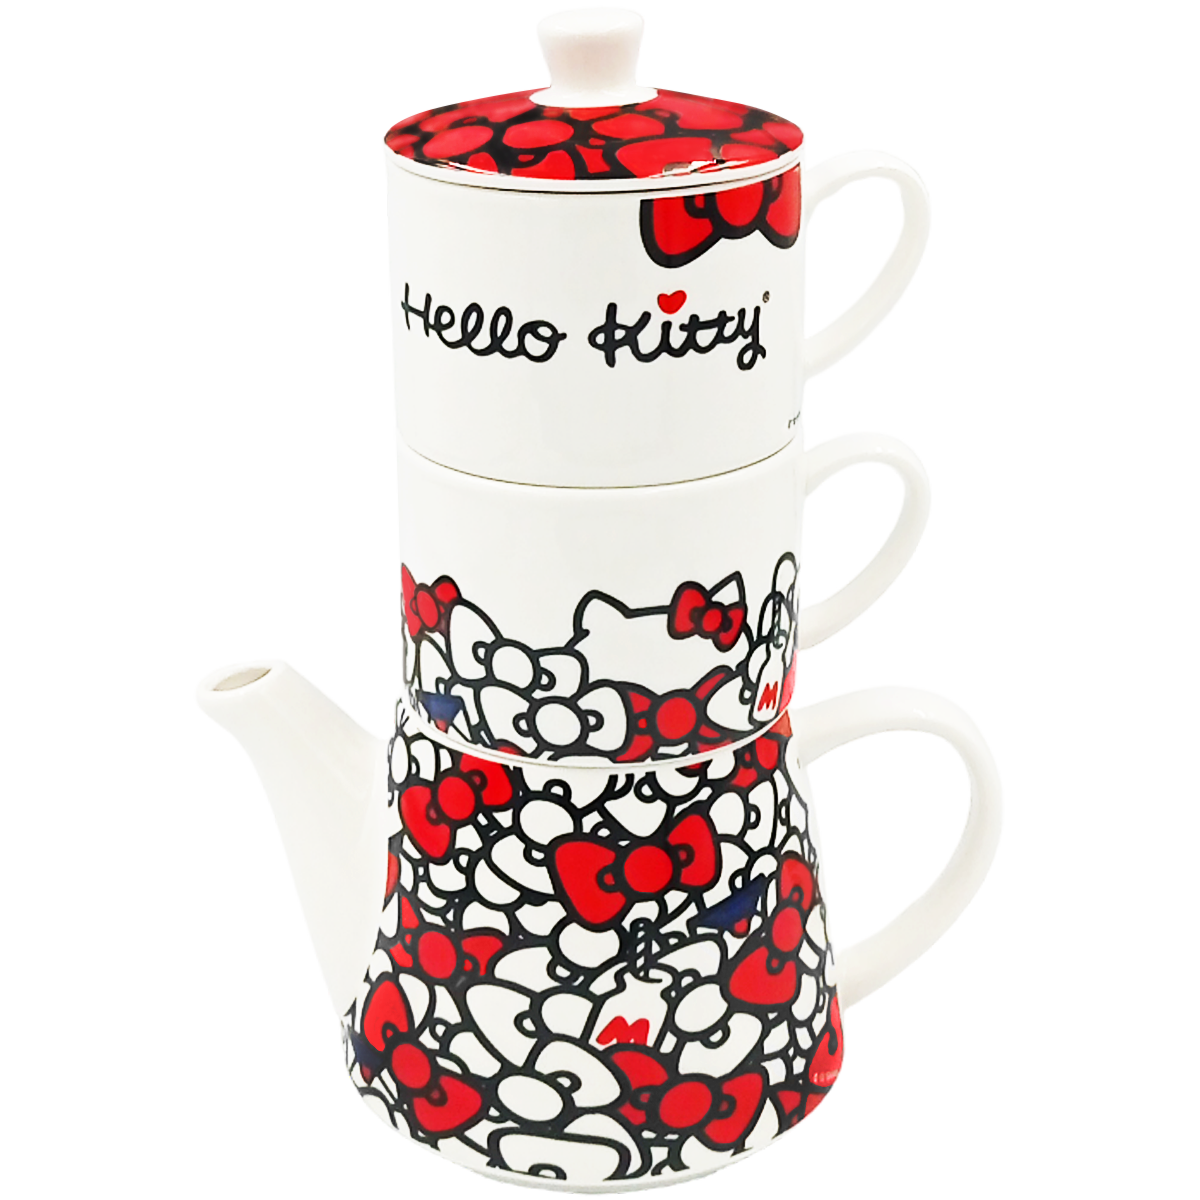 Juego de té de porcelana tetera apilable Hello Kitty